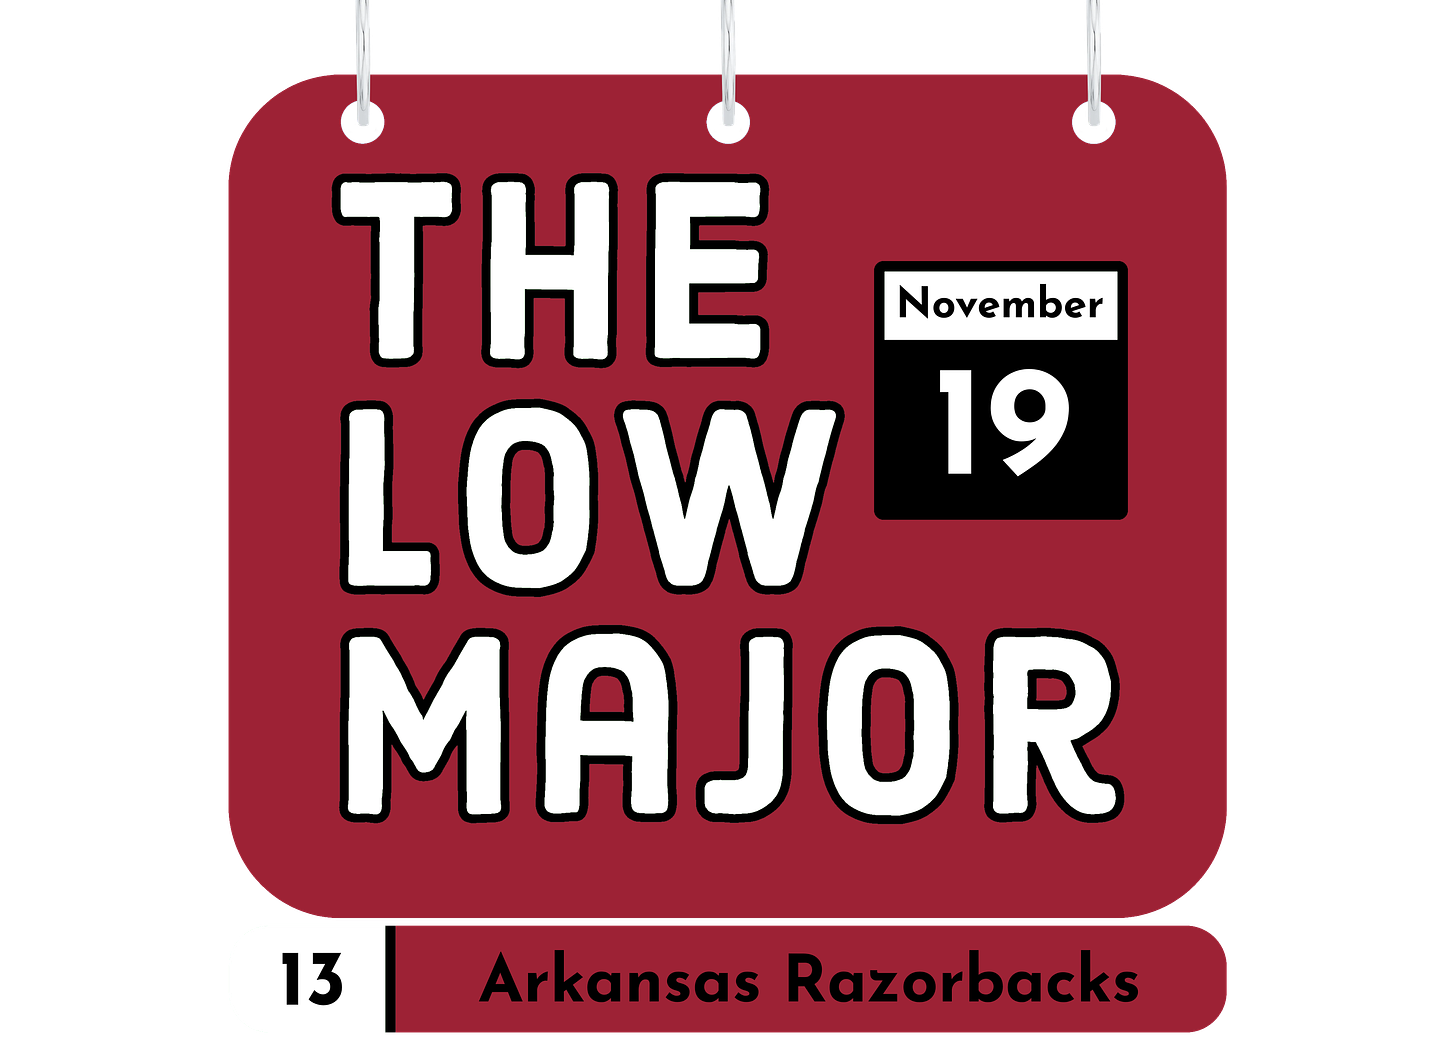 Name-a-Day Arkansas logo